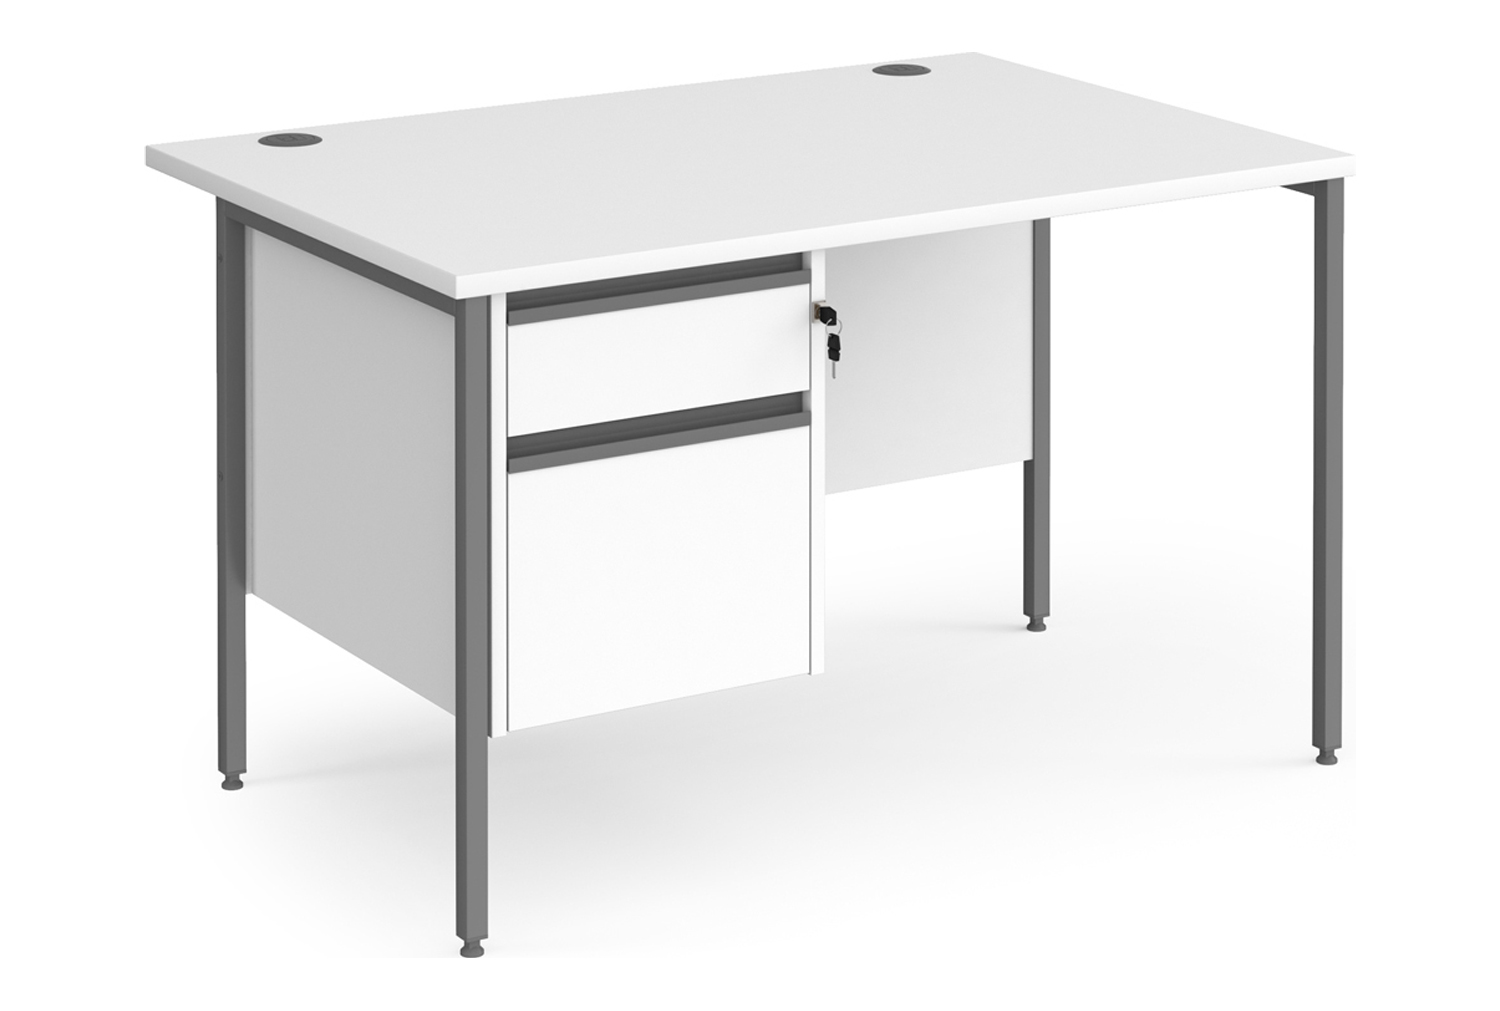 Value Line Classic+ Rectangular H-Leg Office Desk 2 Drawers (Graphite Leg), 120wx80dx73h (cm), White, Fully Installed